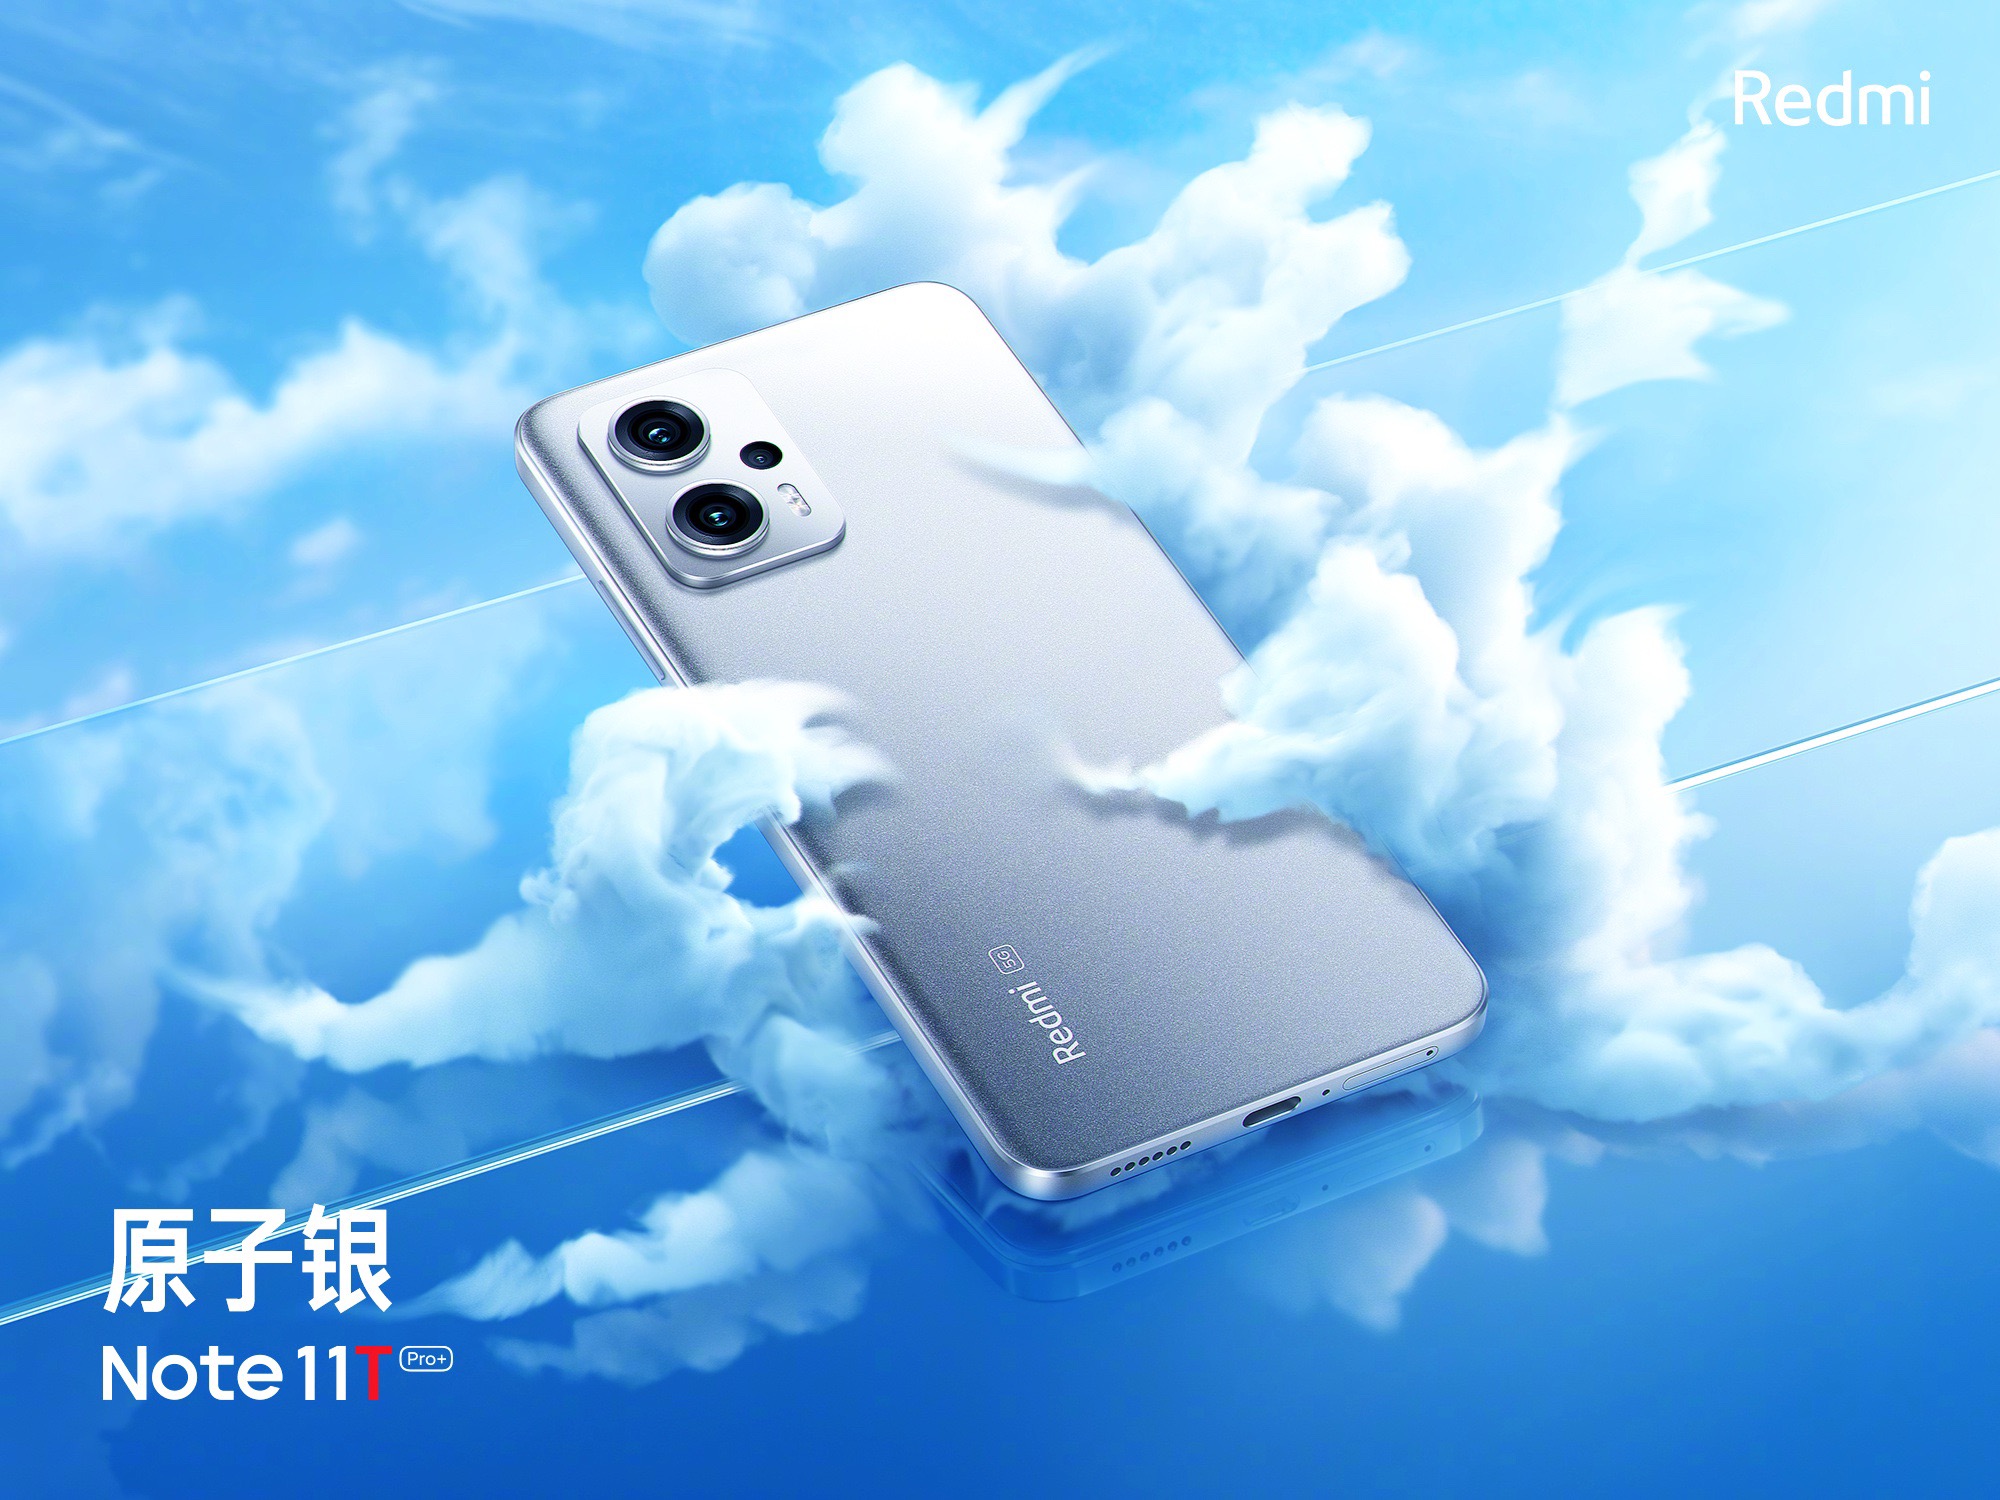 Le nouveau Xiaomi est devenu le meilleur smartphone en termes de prix et de performances dans AnTuTu